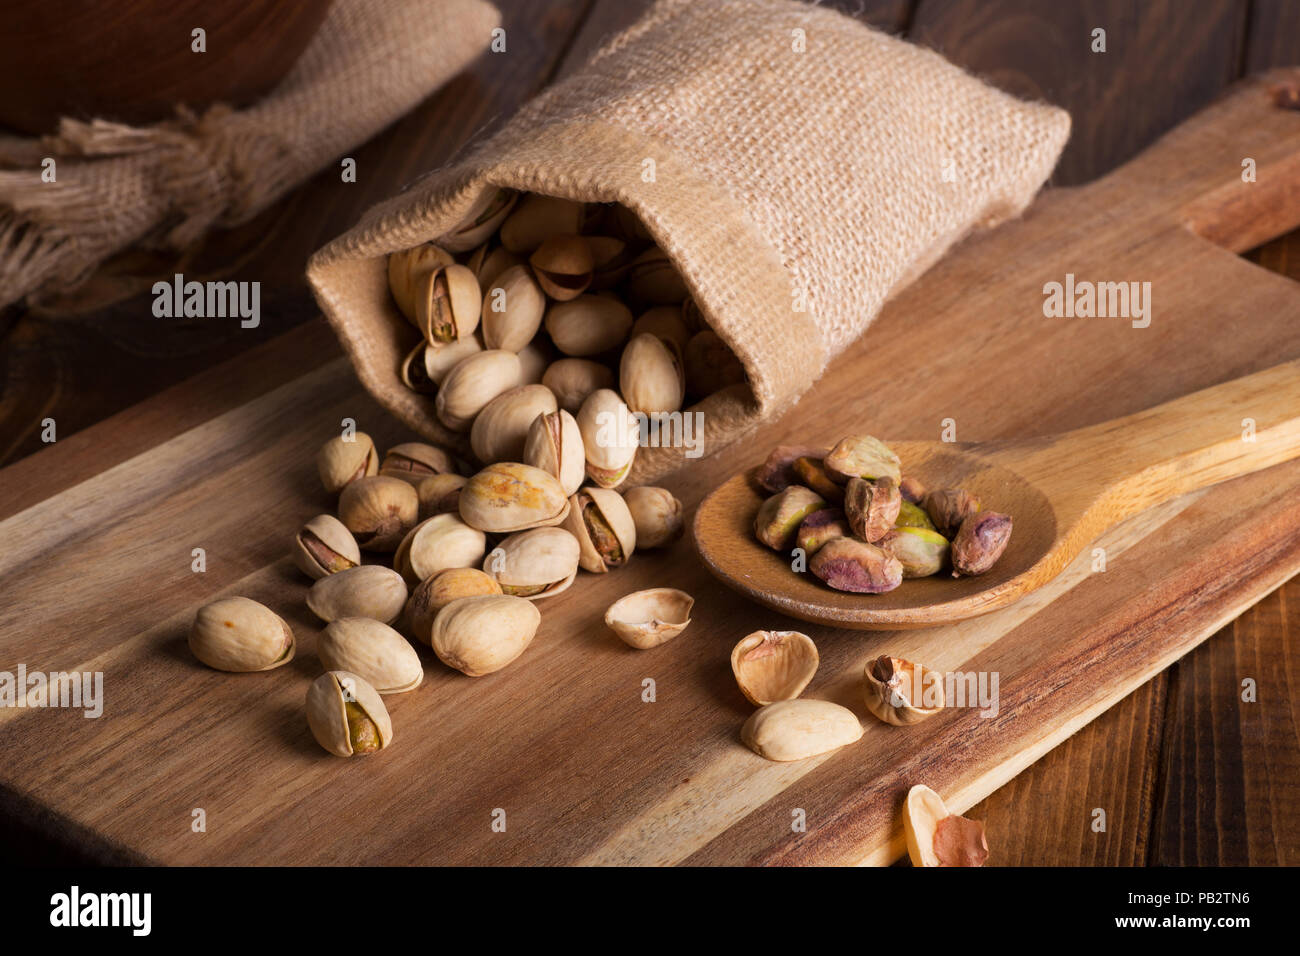 Les pistaches déversés par un sac de toile et une cuillerée de pistaches sur une planche en bois Banque D'Images